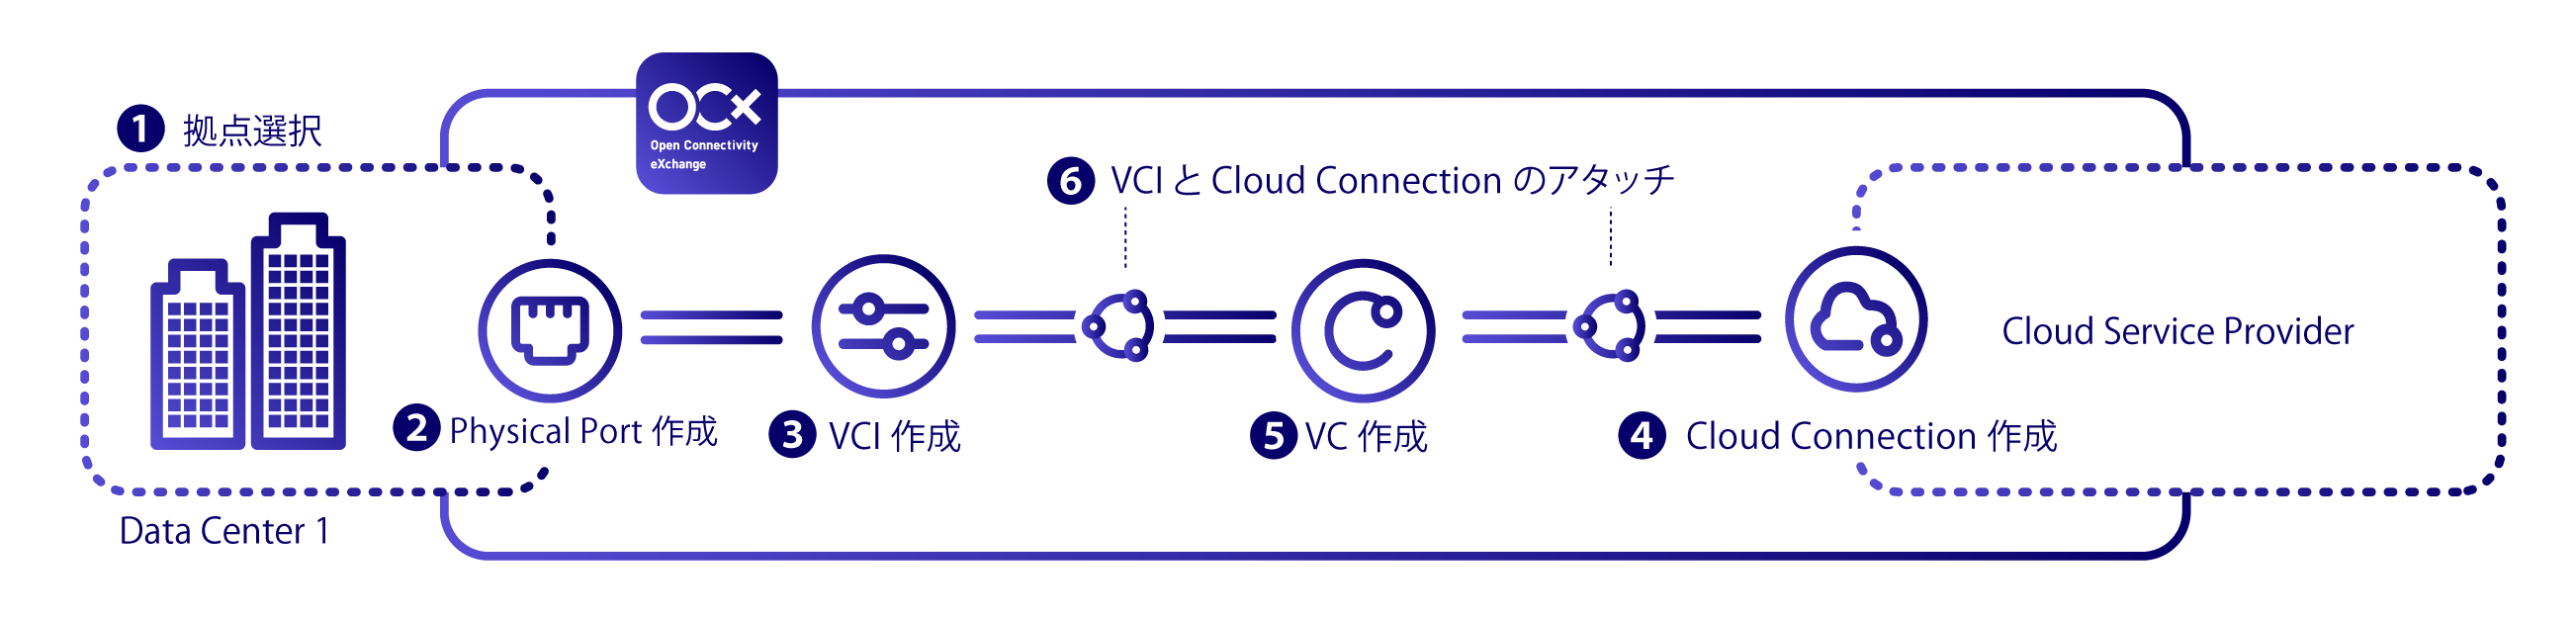 OCXネットワークを利用したクラウド接続